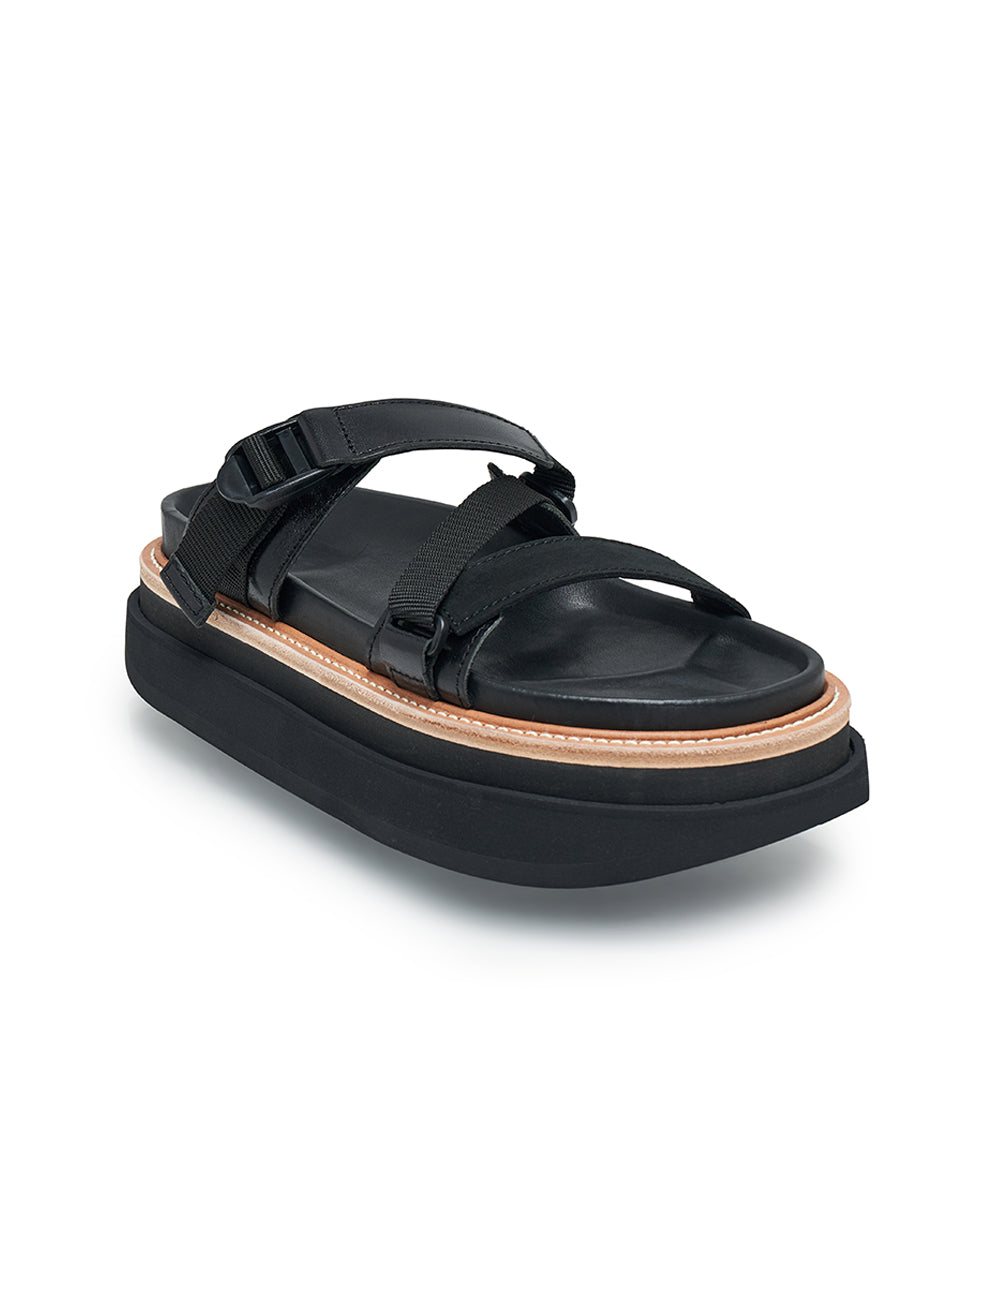 sacai-Hybrid-Belt-Sandals-Black-2